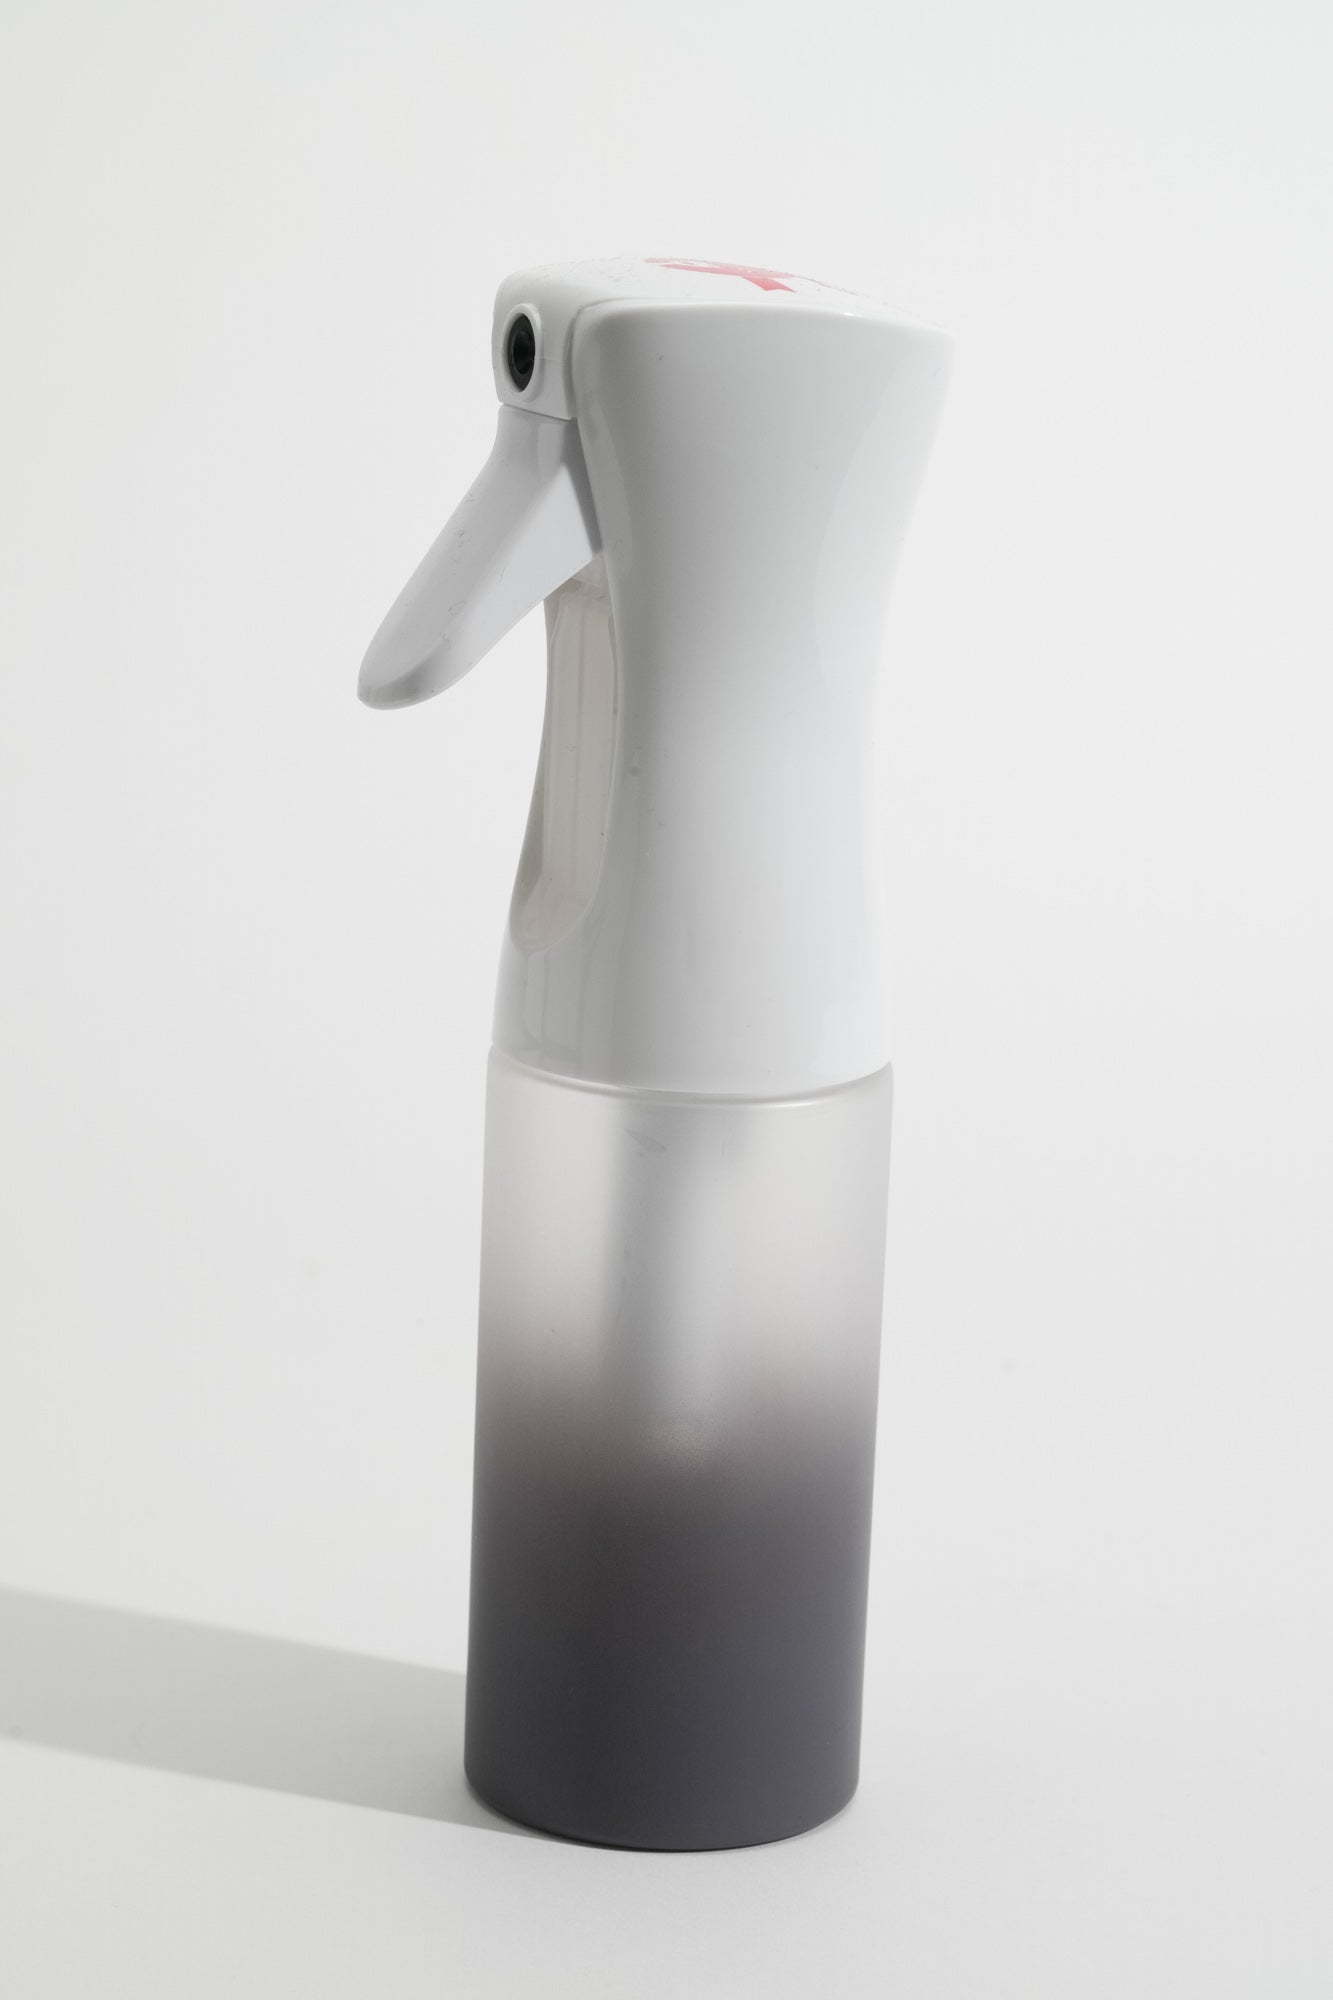 CRAZY POUSS - New vaporisateur crazy - Blanc - Vaporisateur à jet réglable pour humidifier vos cheveux avant le coiffage